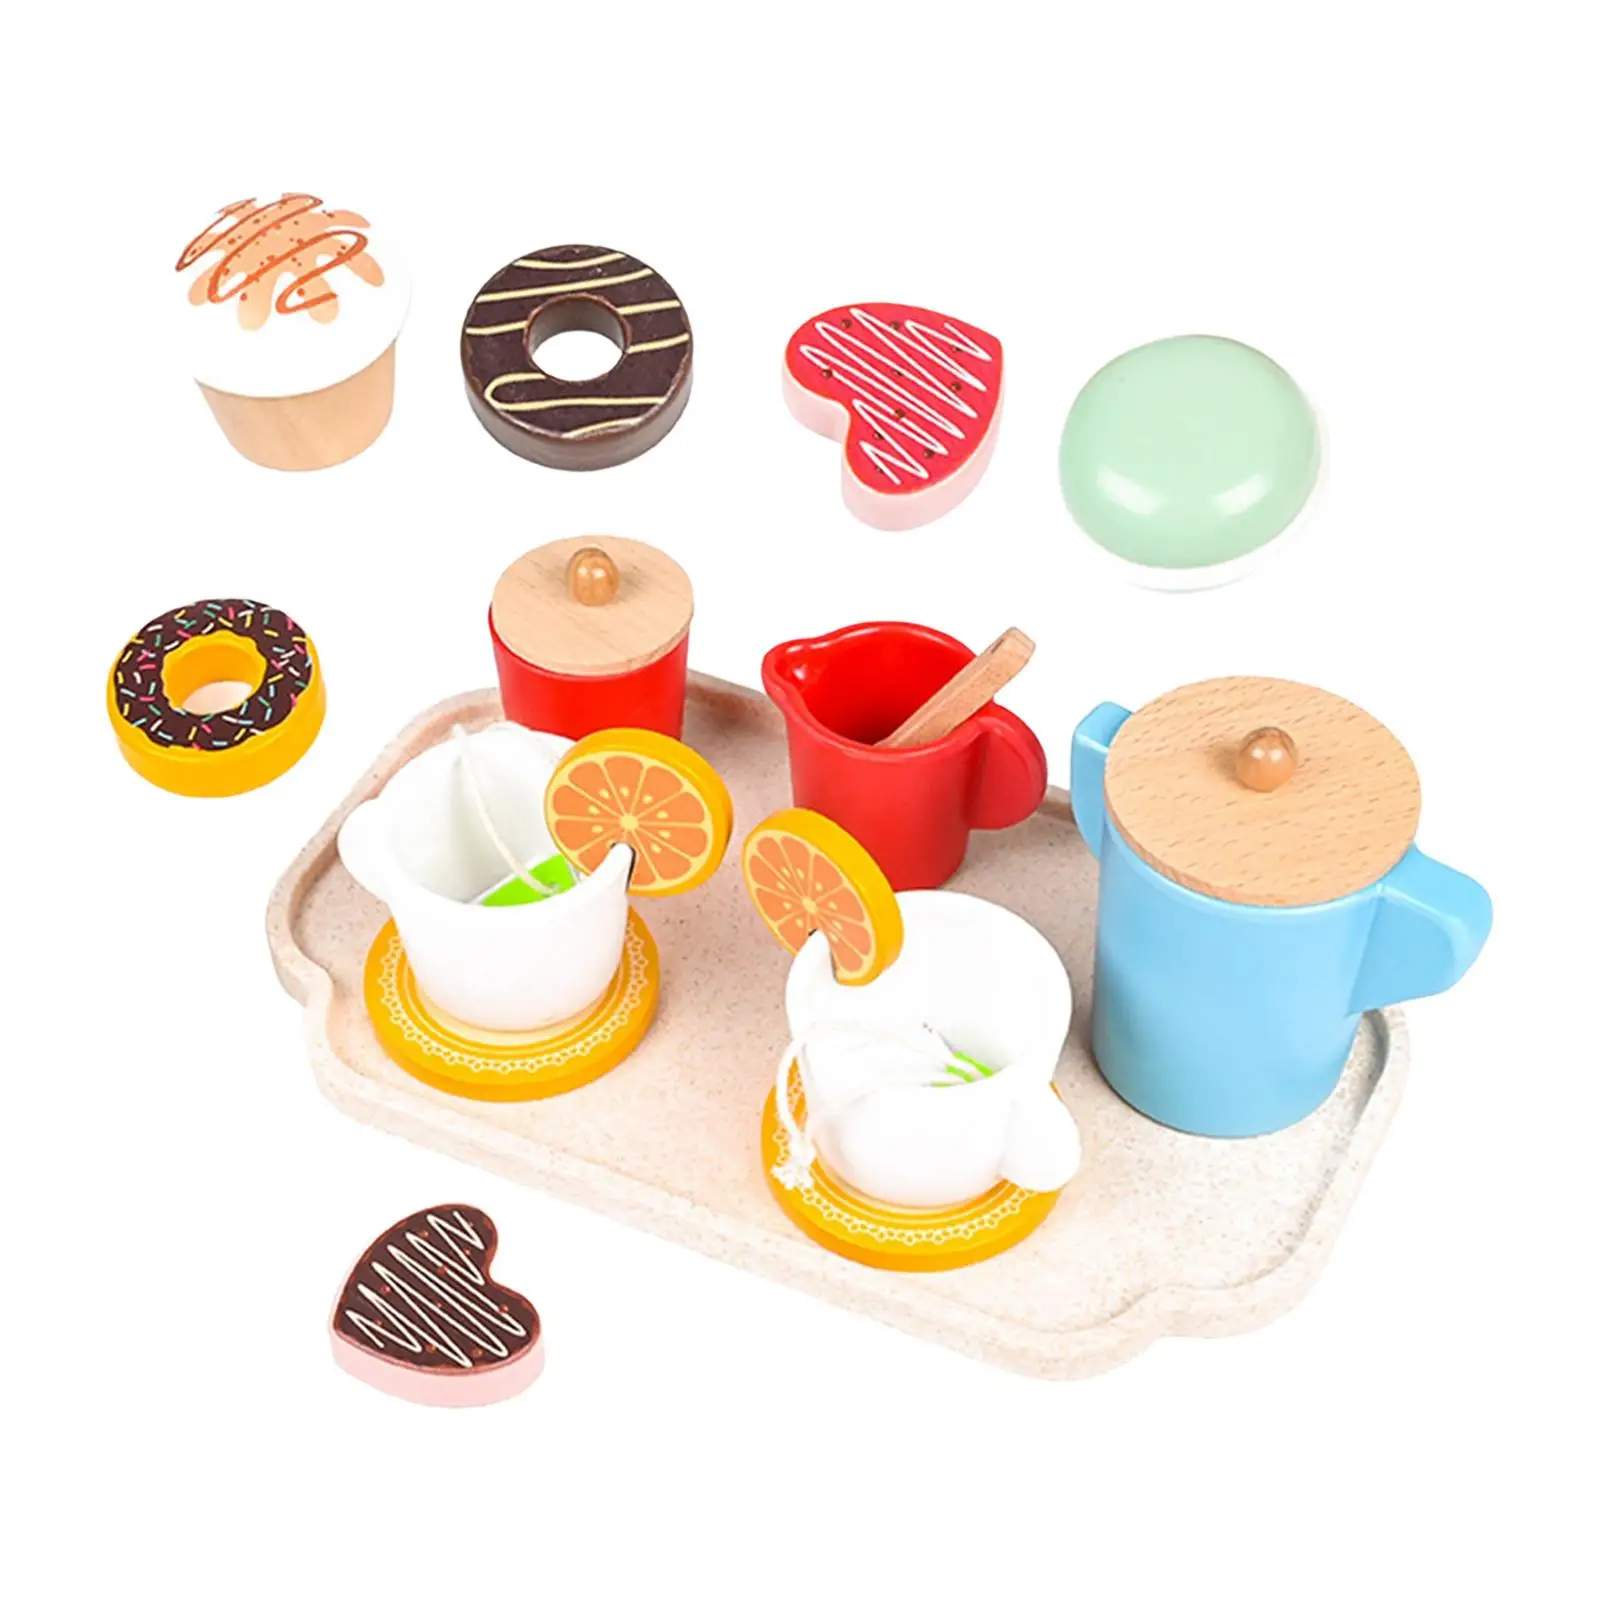 12шт Посуда для чаепития Развивающая игрушка Монтессори для детей дошкольного возраста Мальчиков Девочек малышей в возрасте 3 4 5 лет